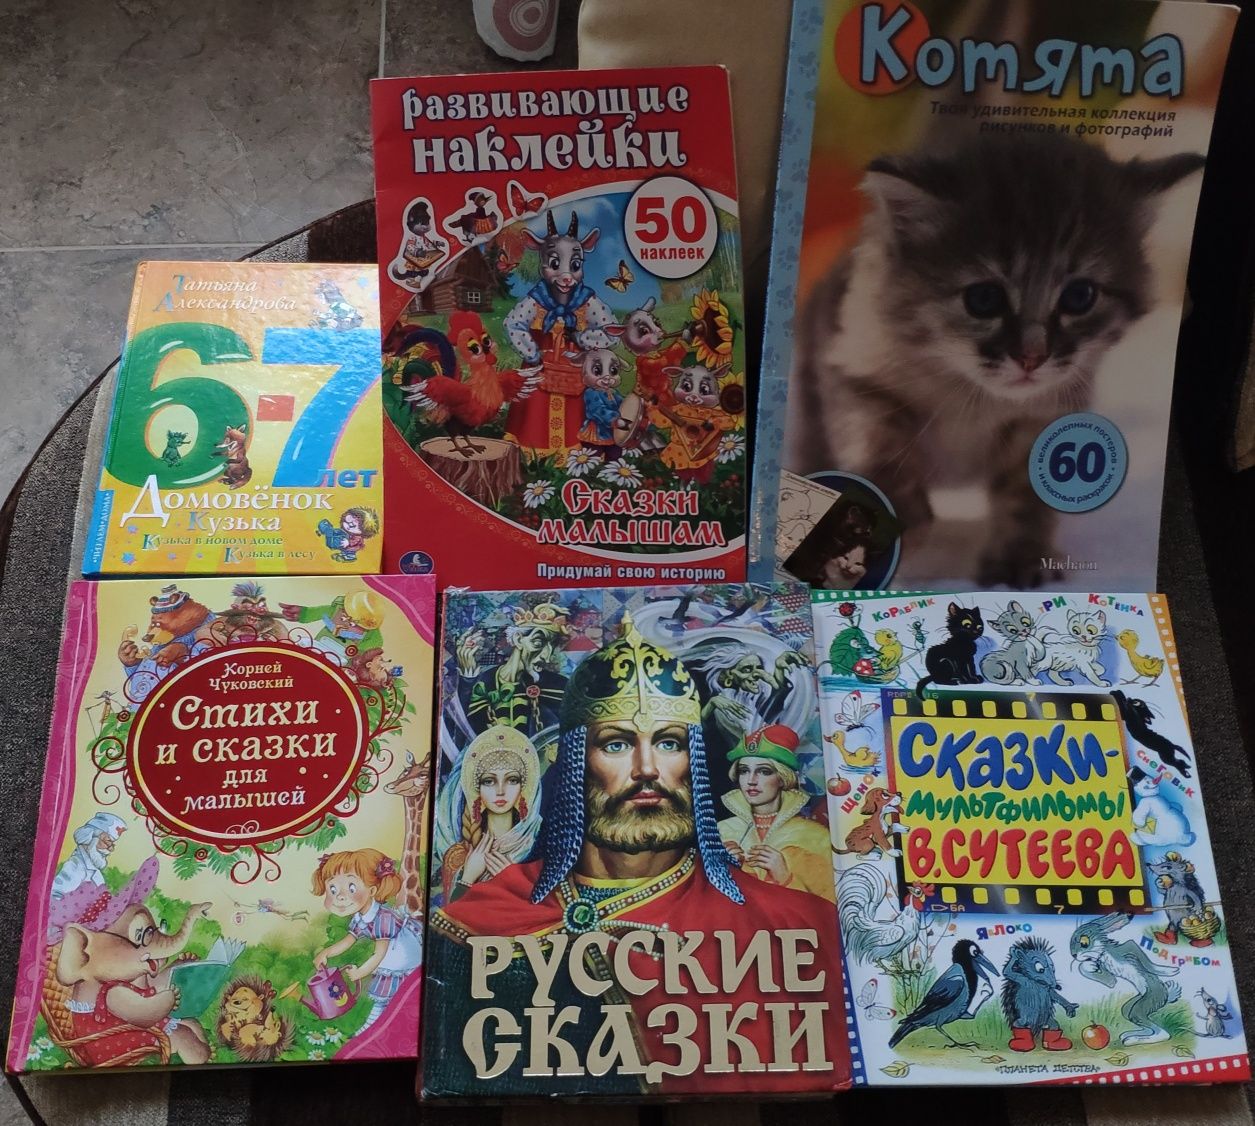 Речници и книги на руски език